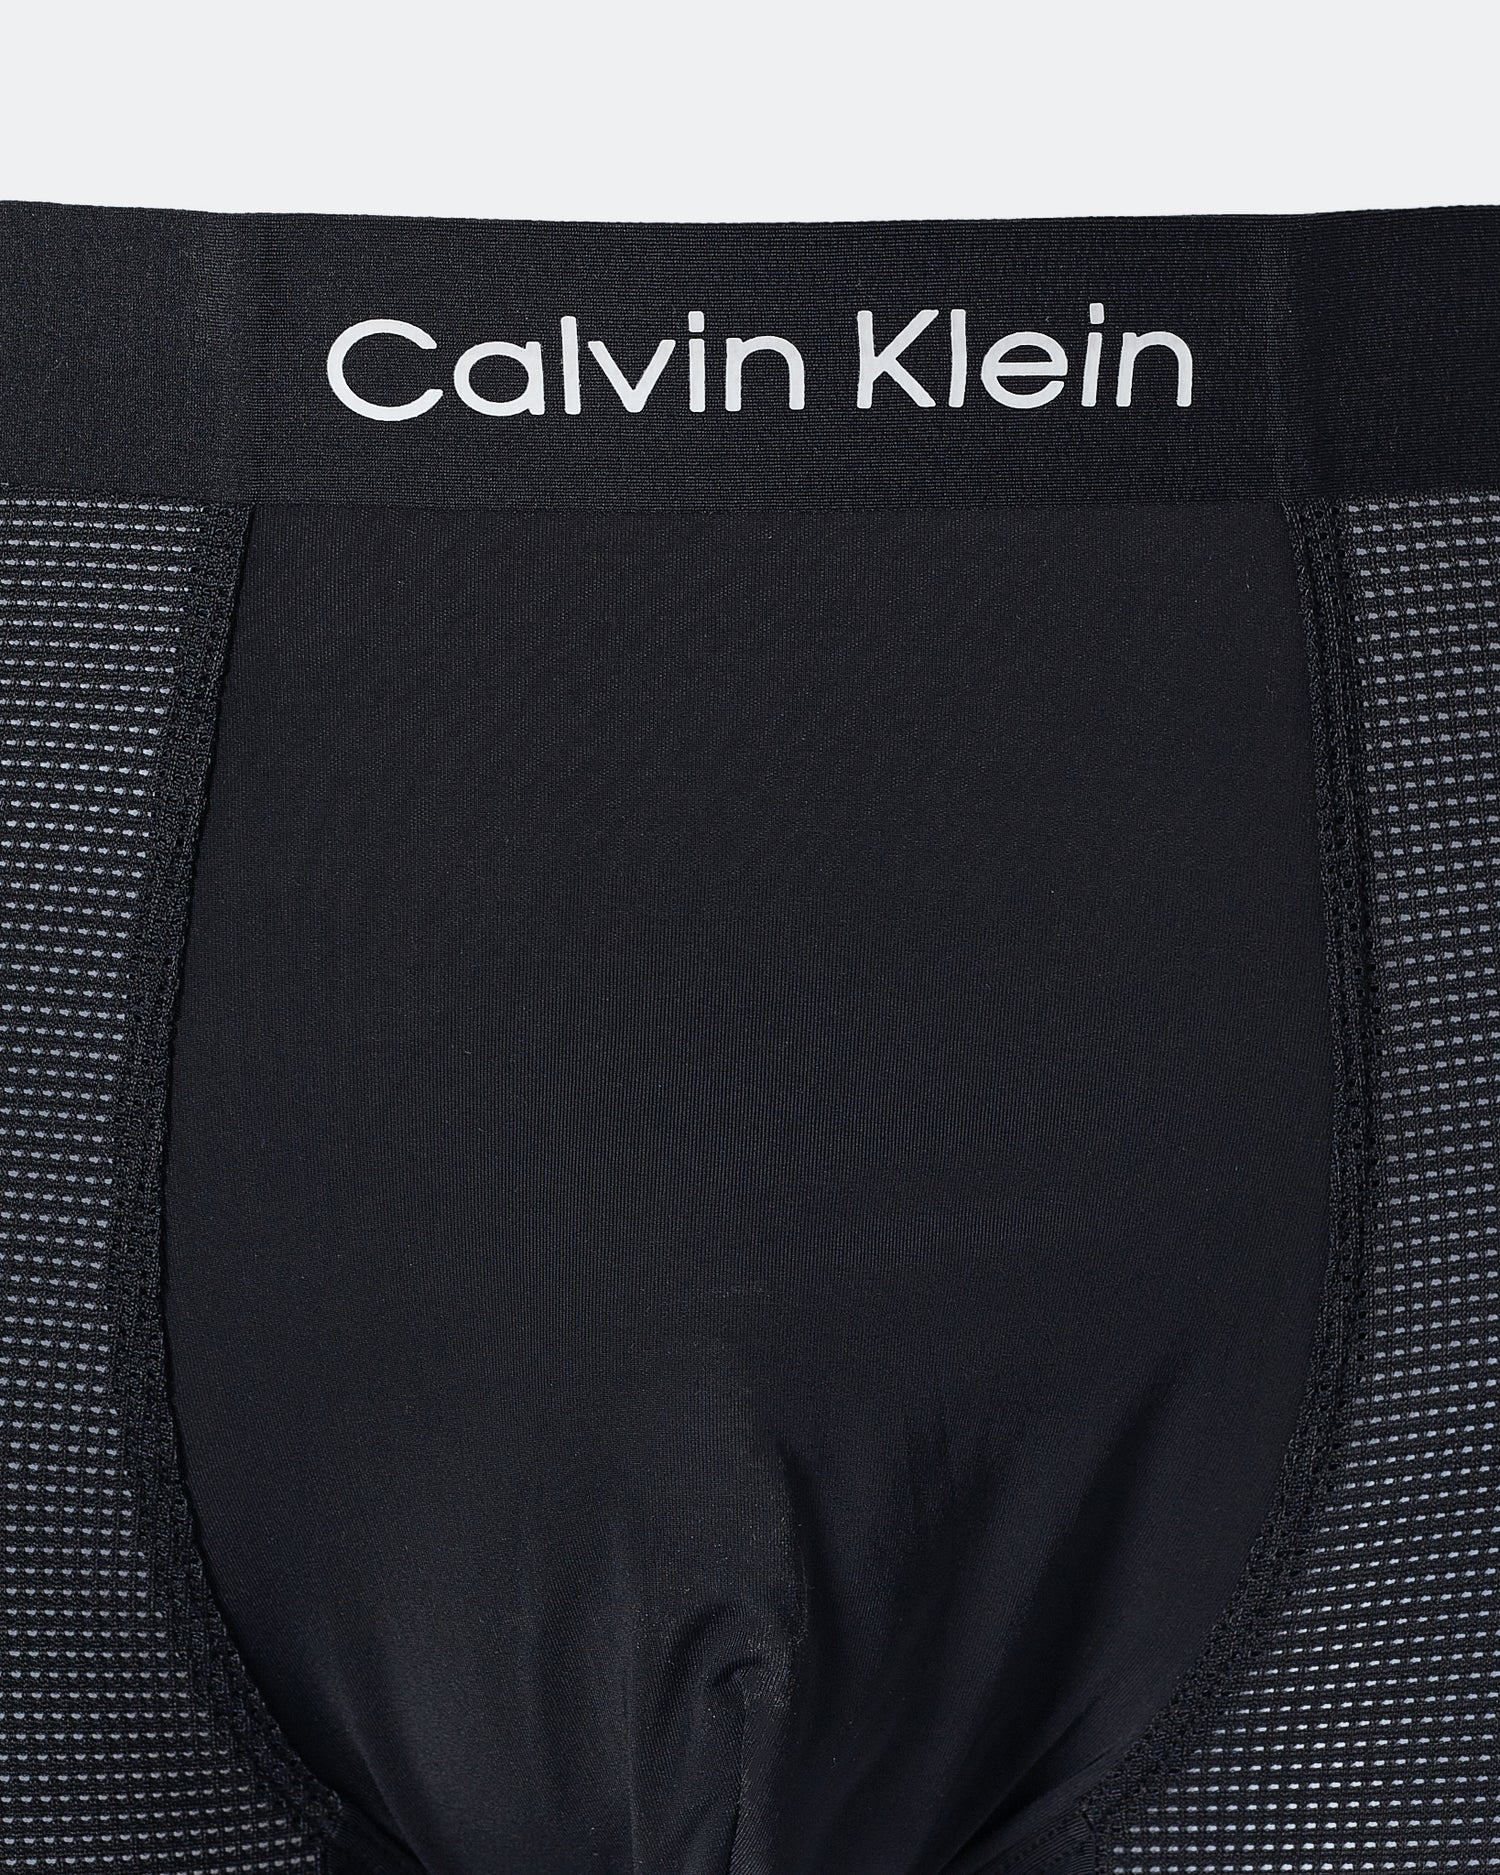 CK Light Weight Men Black Underwear 6.90